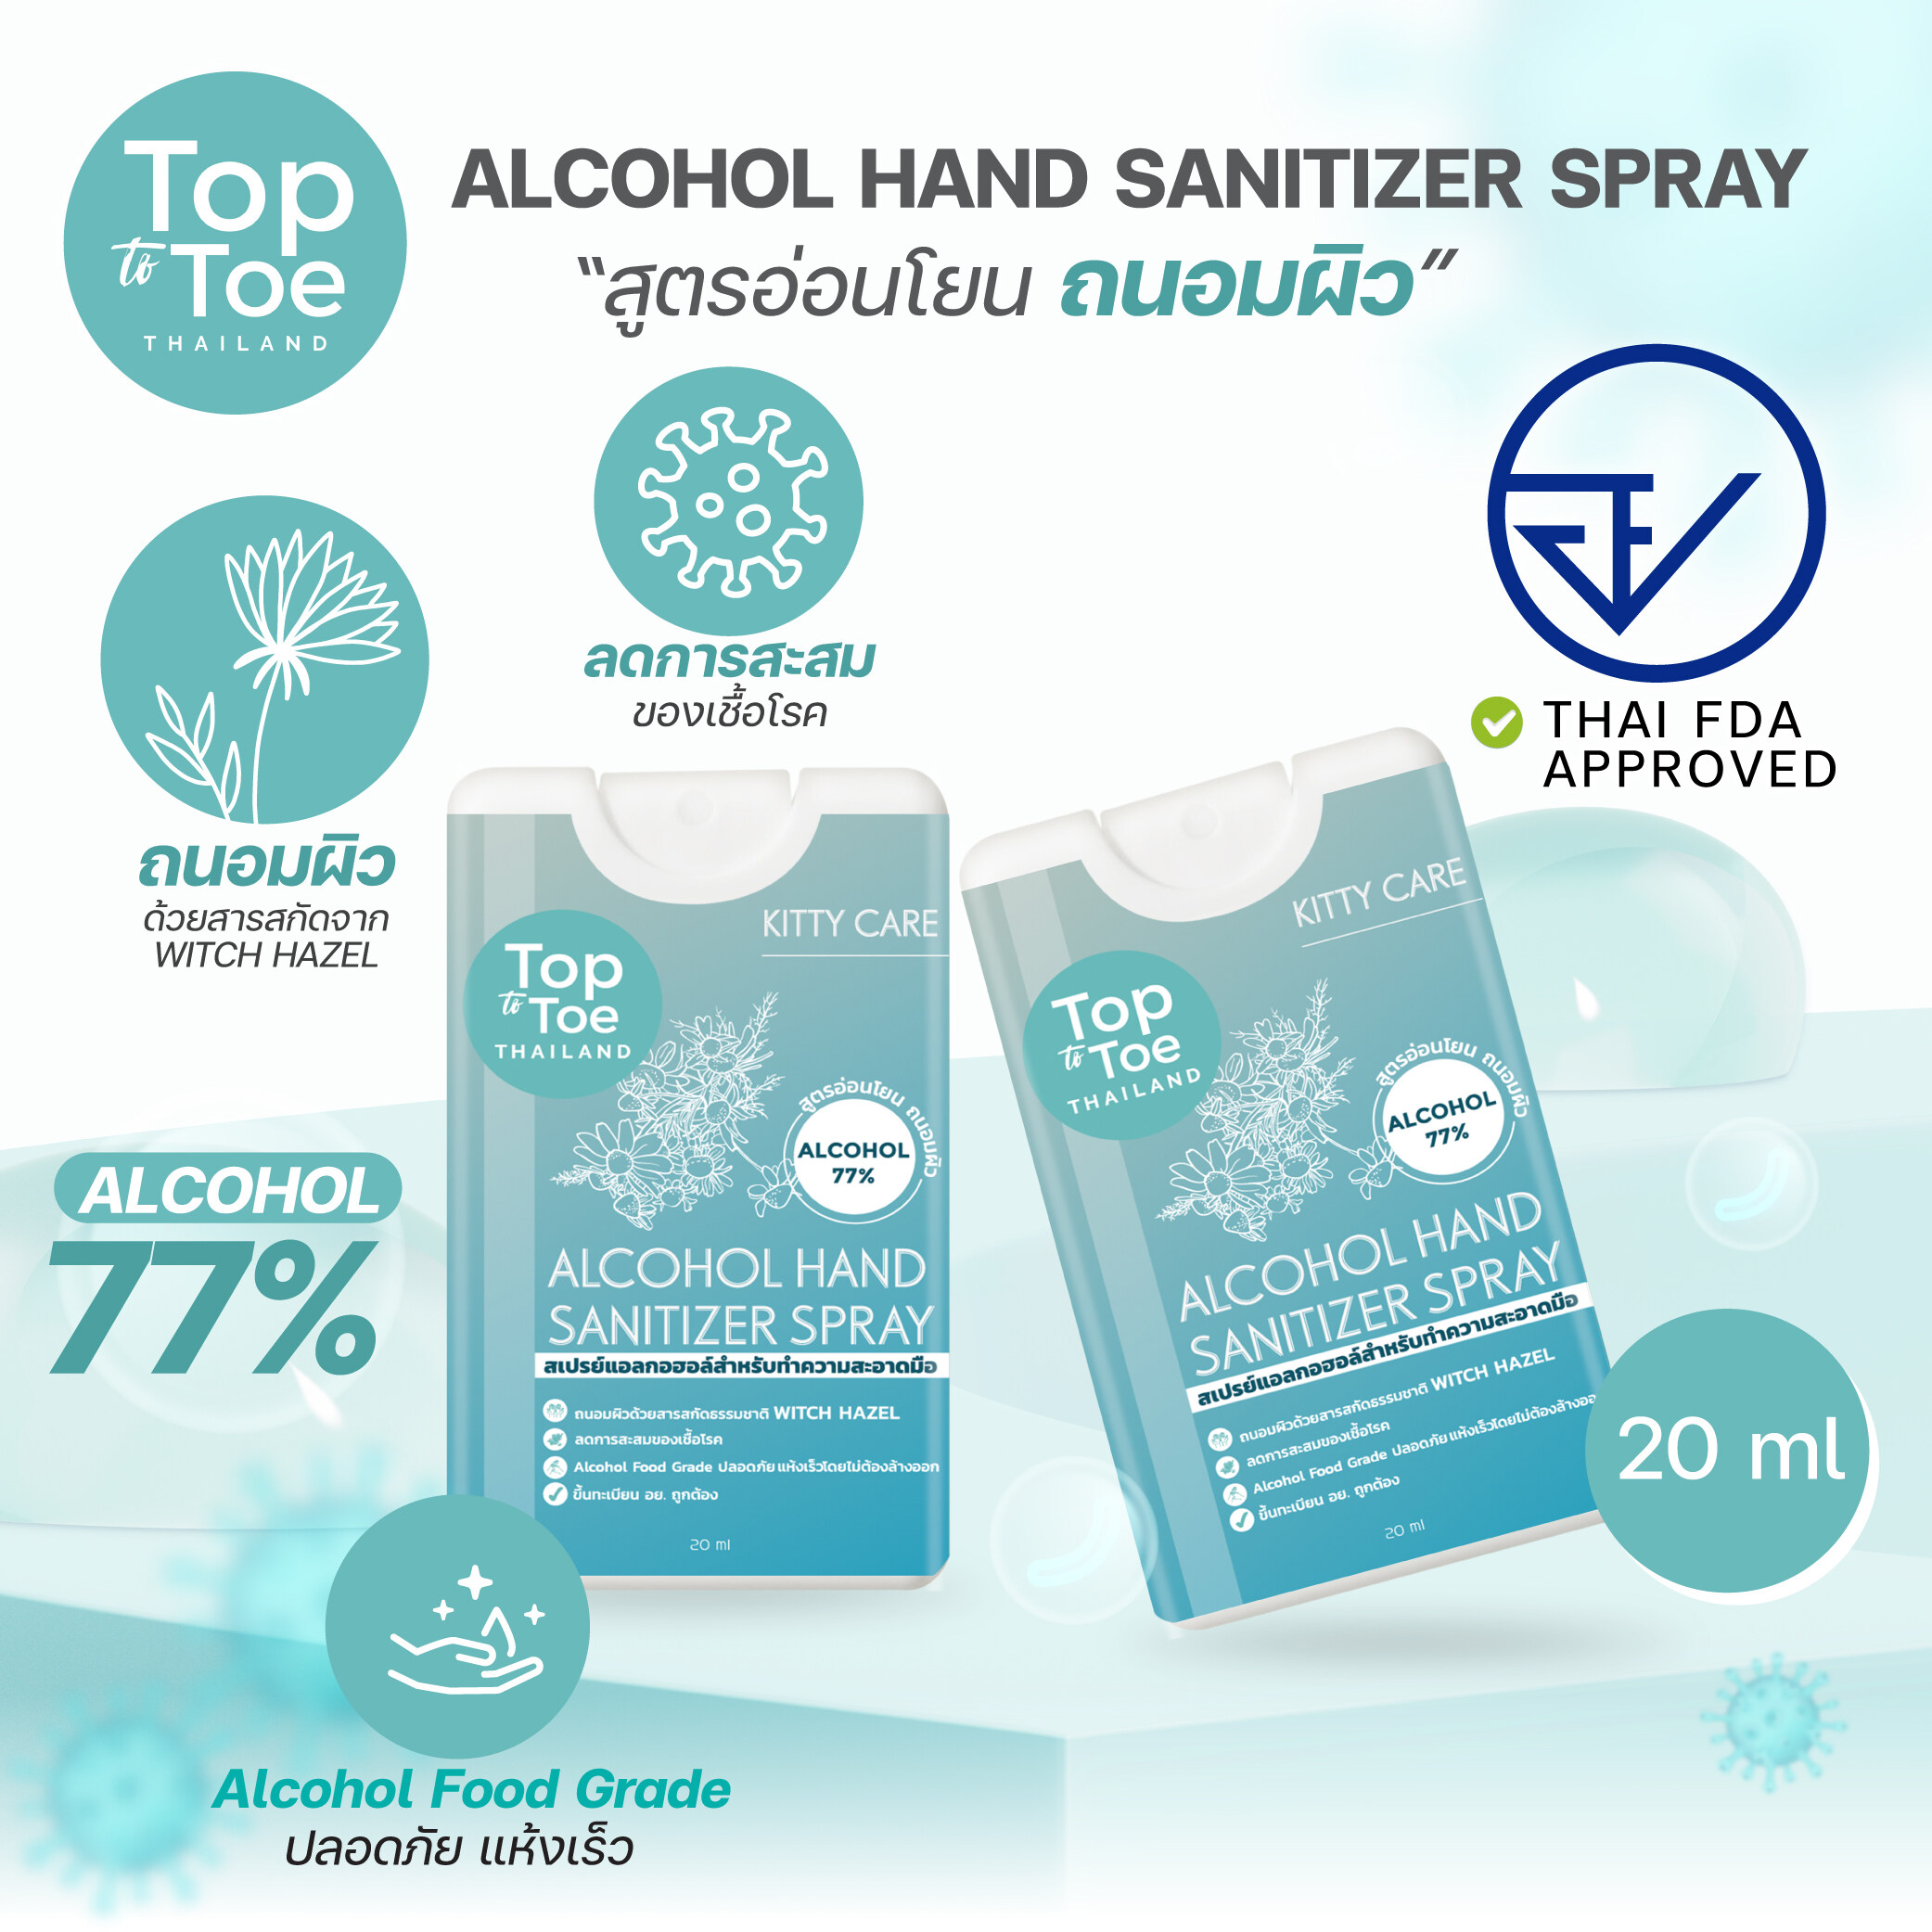 แอลกอฮอล์สเปรย์ Hand Sanitizer Spray 20ml. Alcohol Food Grade 77% ล้างมือ ไม่ต้องล้างออก ฆ่าเชื้อ แบบตลับ ขนาดพกพา ลดการสะสมของเชื้อโรค สูตรอ่อนโยน ถนอมผิว